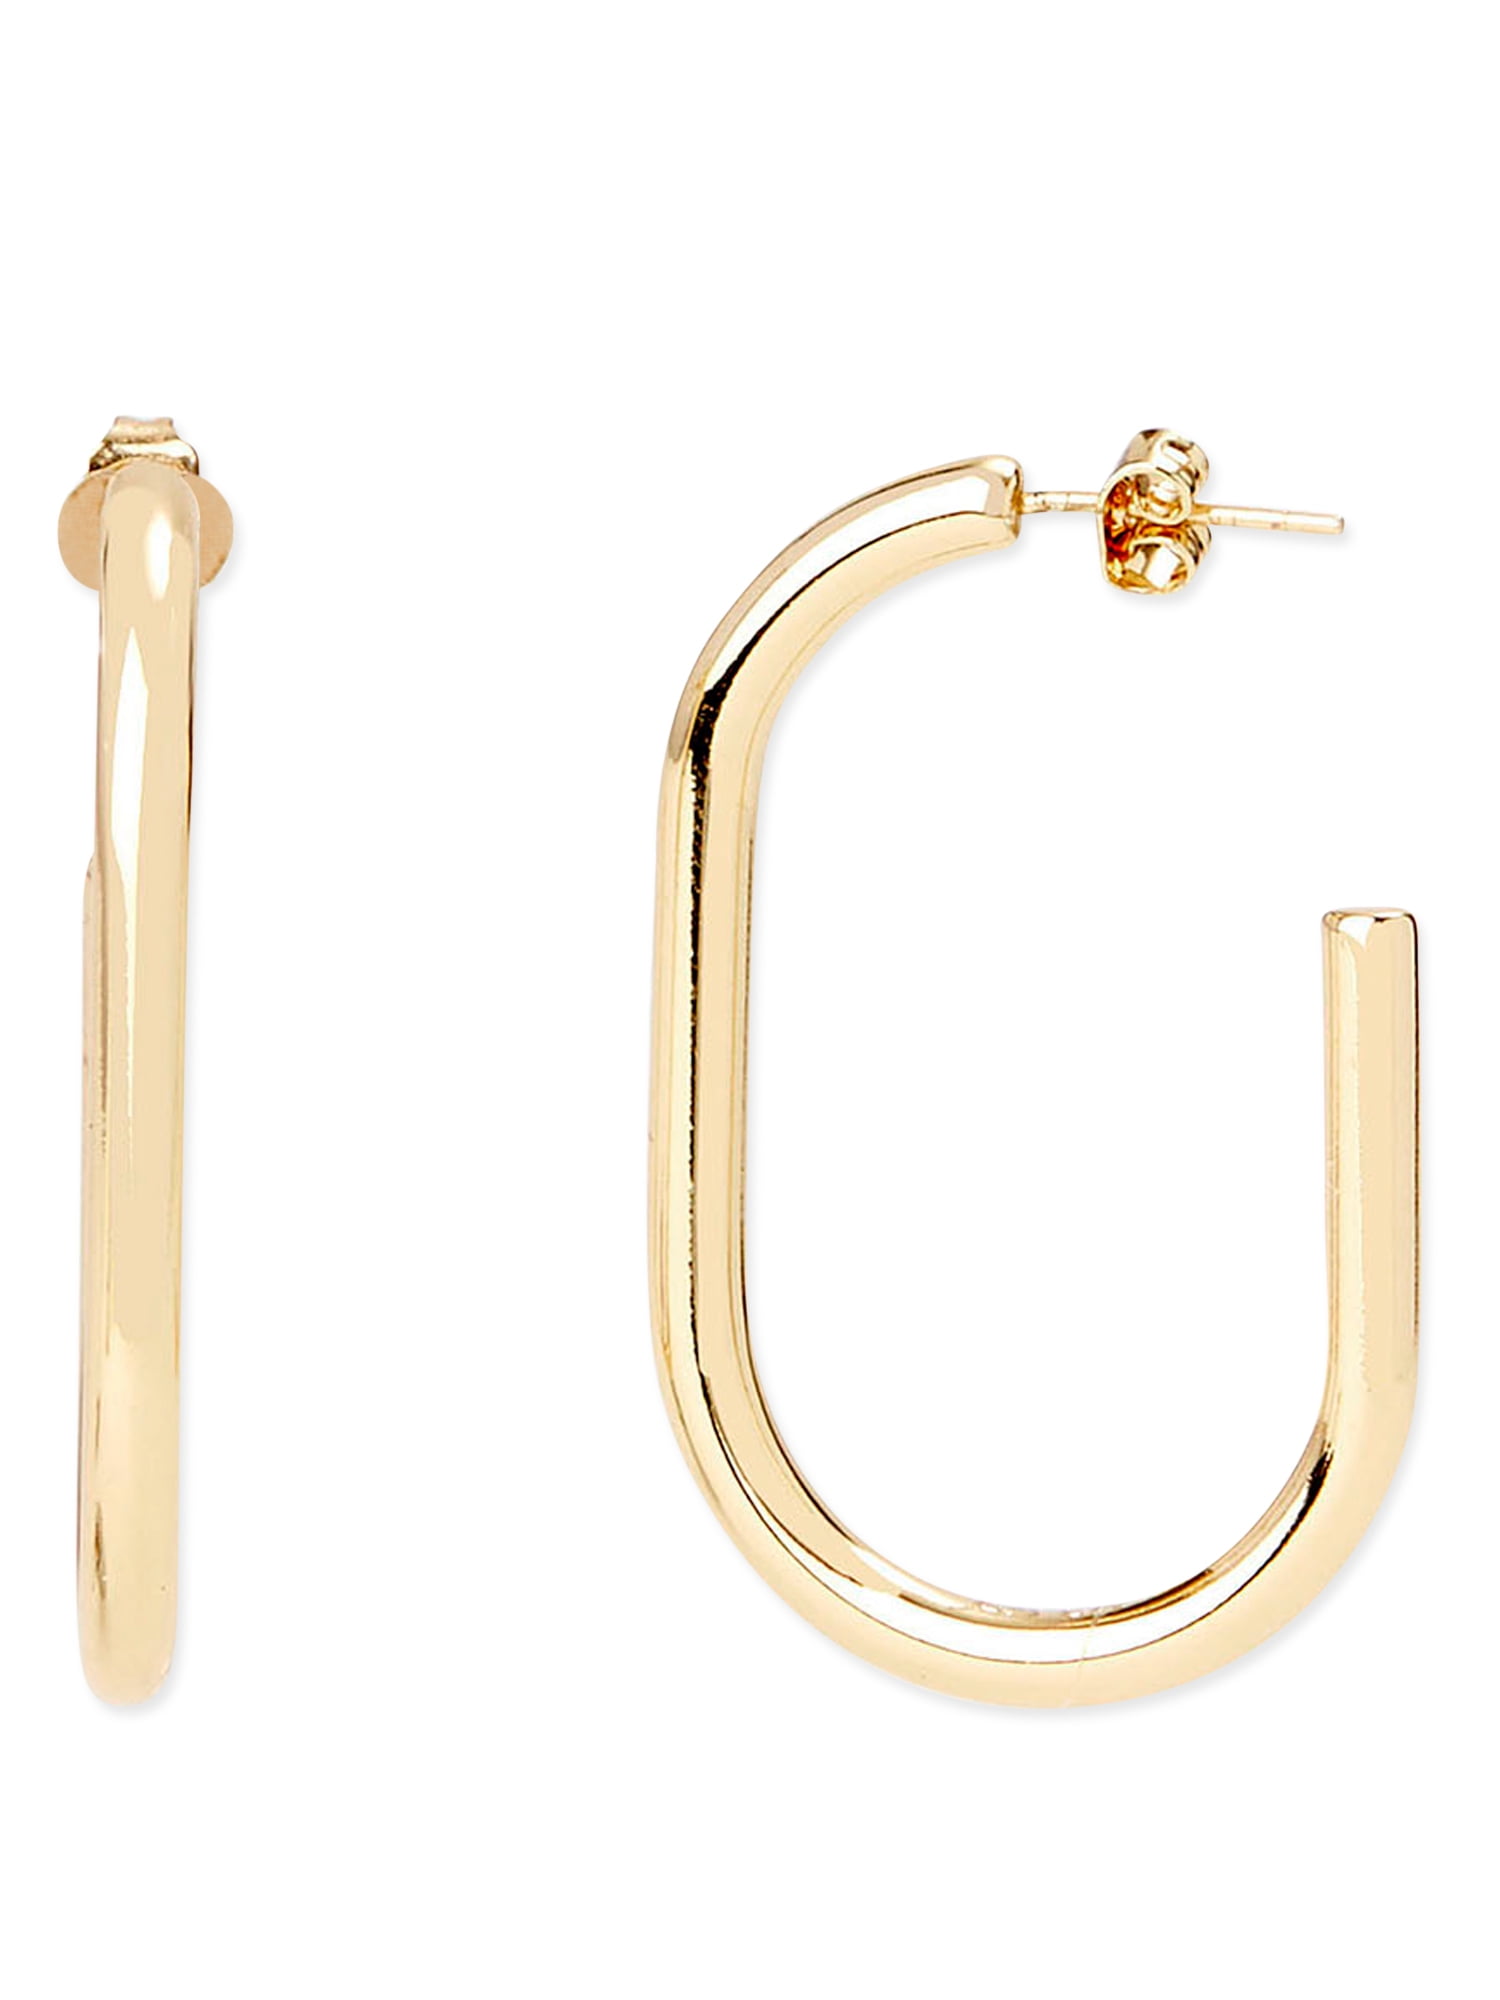 18K Gold Plated Brass Faux Pearl and Cubic Zirconia Charm Huggie Hoop Earrings Handmade Hoop Earrings by Detail London.